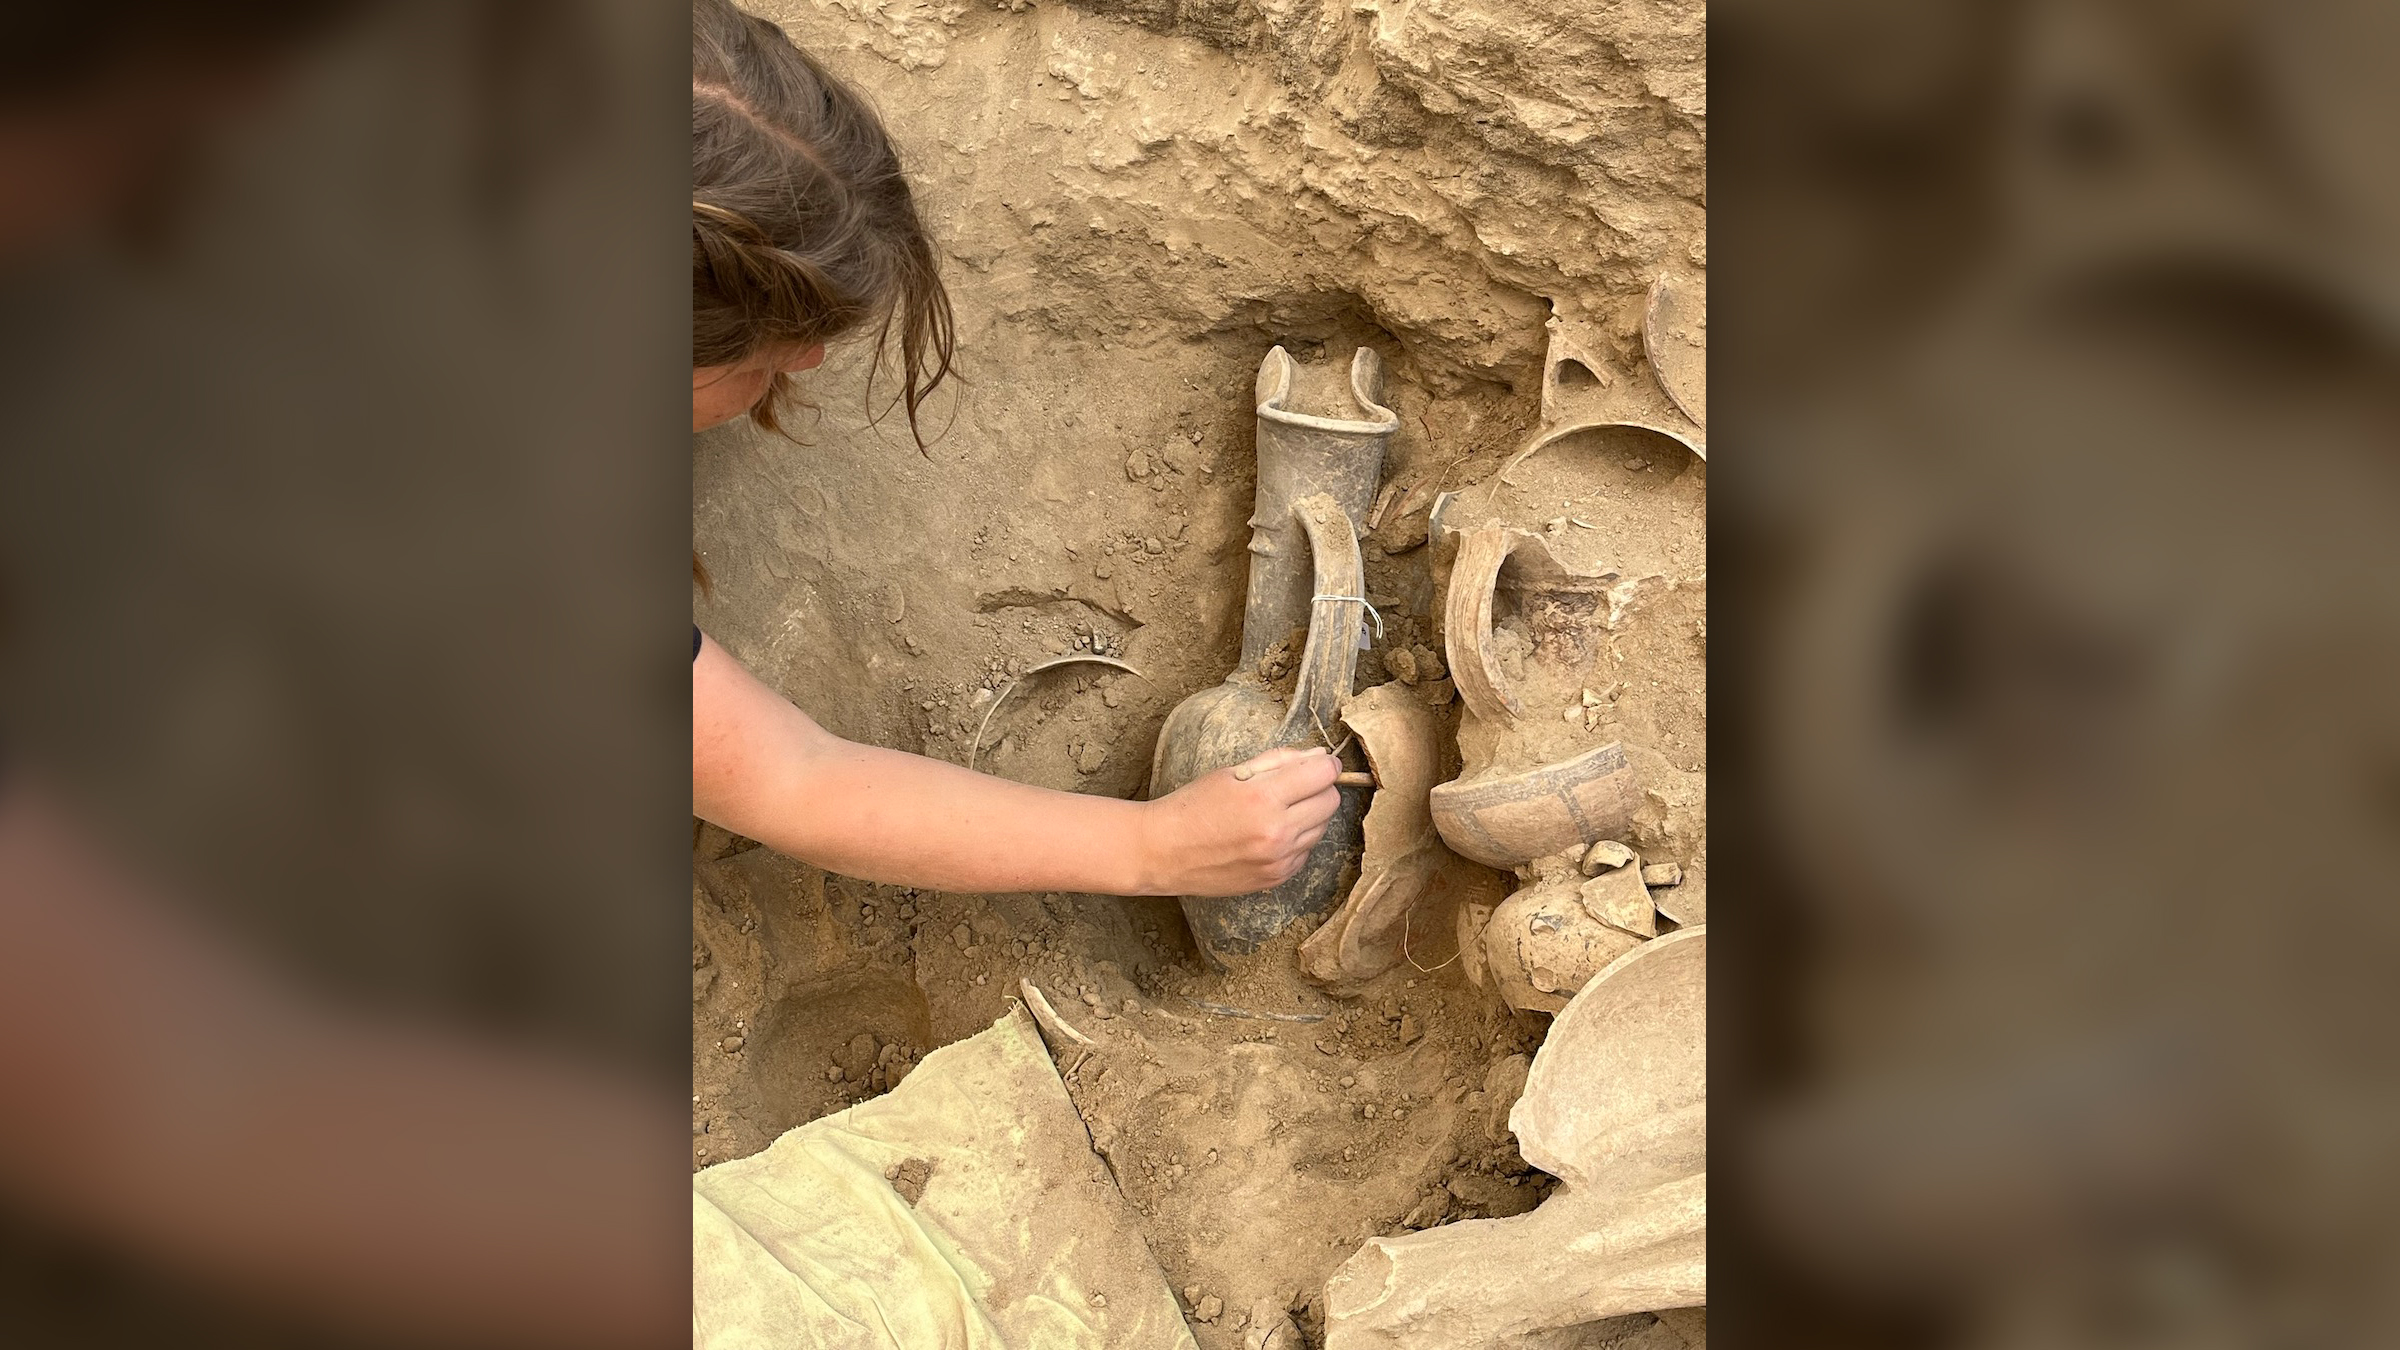 Una investigadora alcanza una jarra enterrada en la tierra.